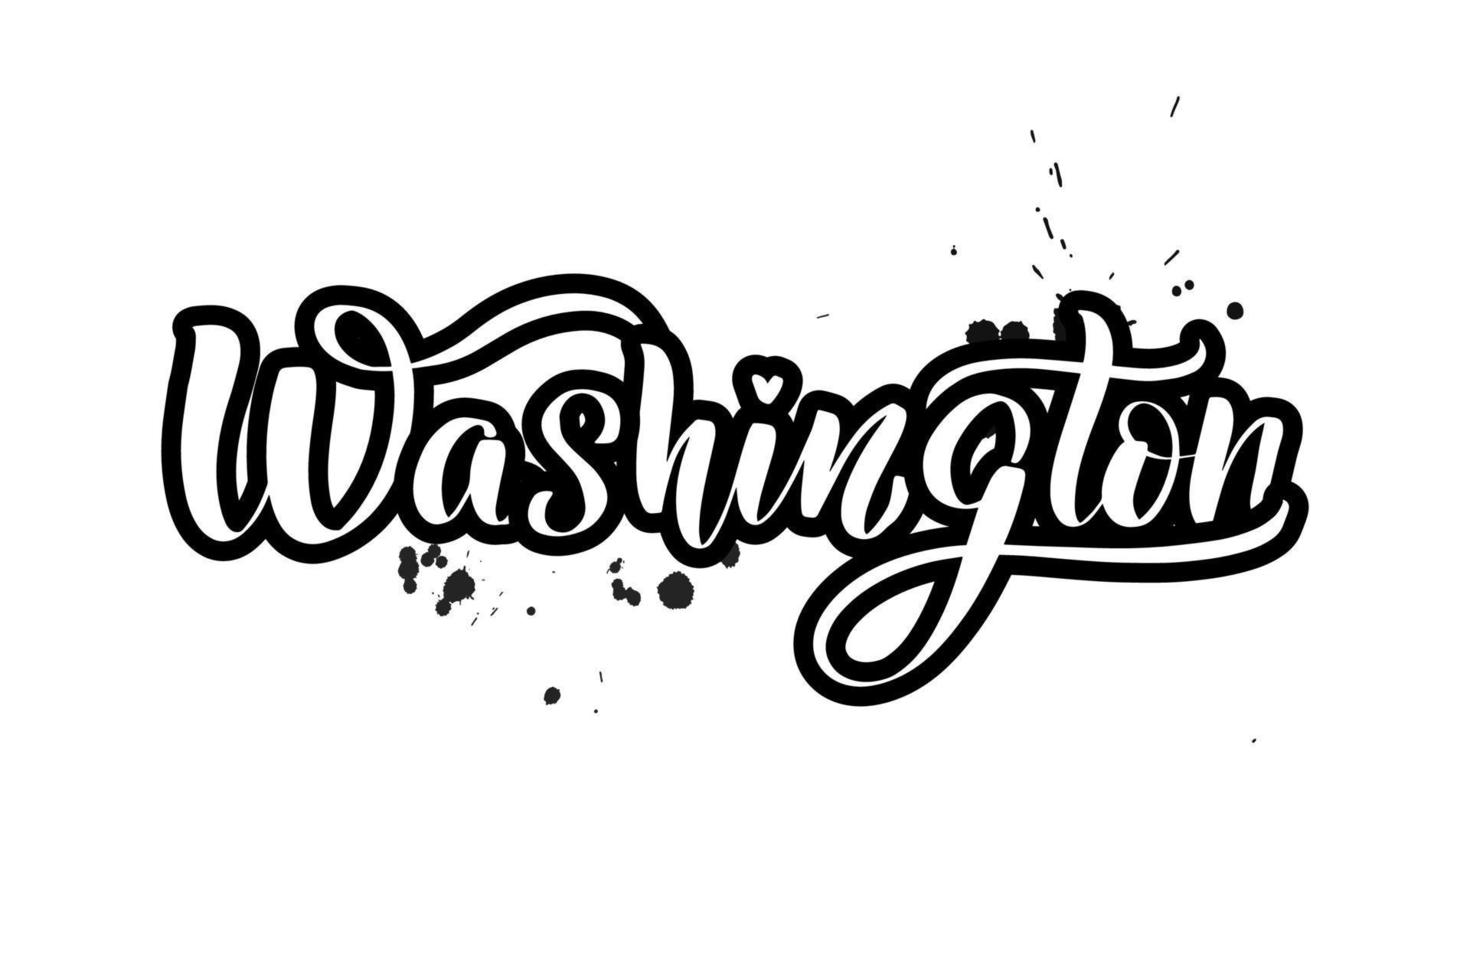 Washington inspirador escrito a mano con letras de pincel. ilustración de caligrafía vectorial aislada sobre fondo blanco. tipografía para pancartas, insignias, postales, camisetas, impresiones, carteles. vector